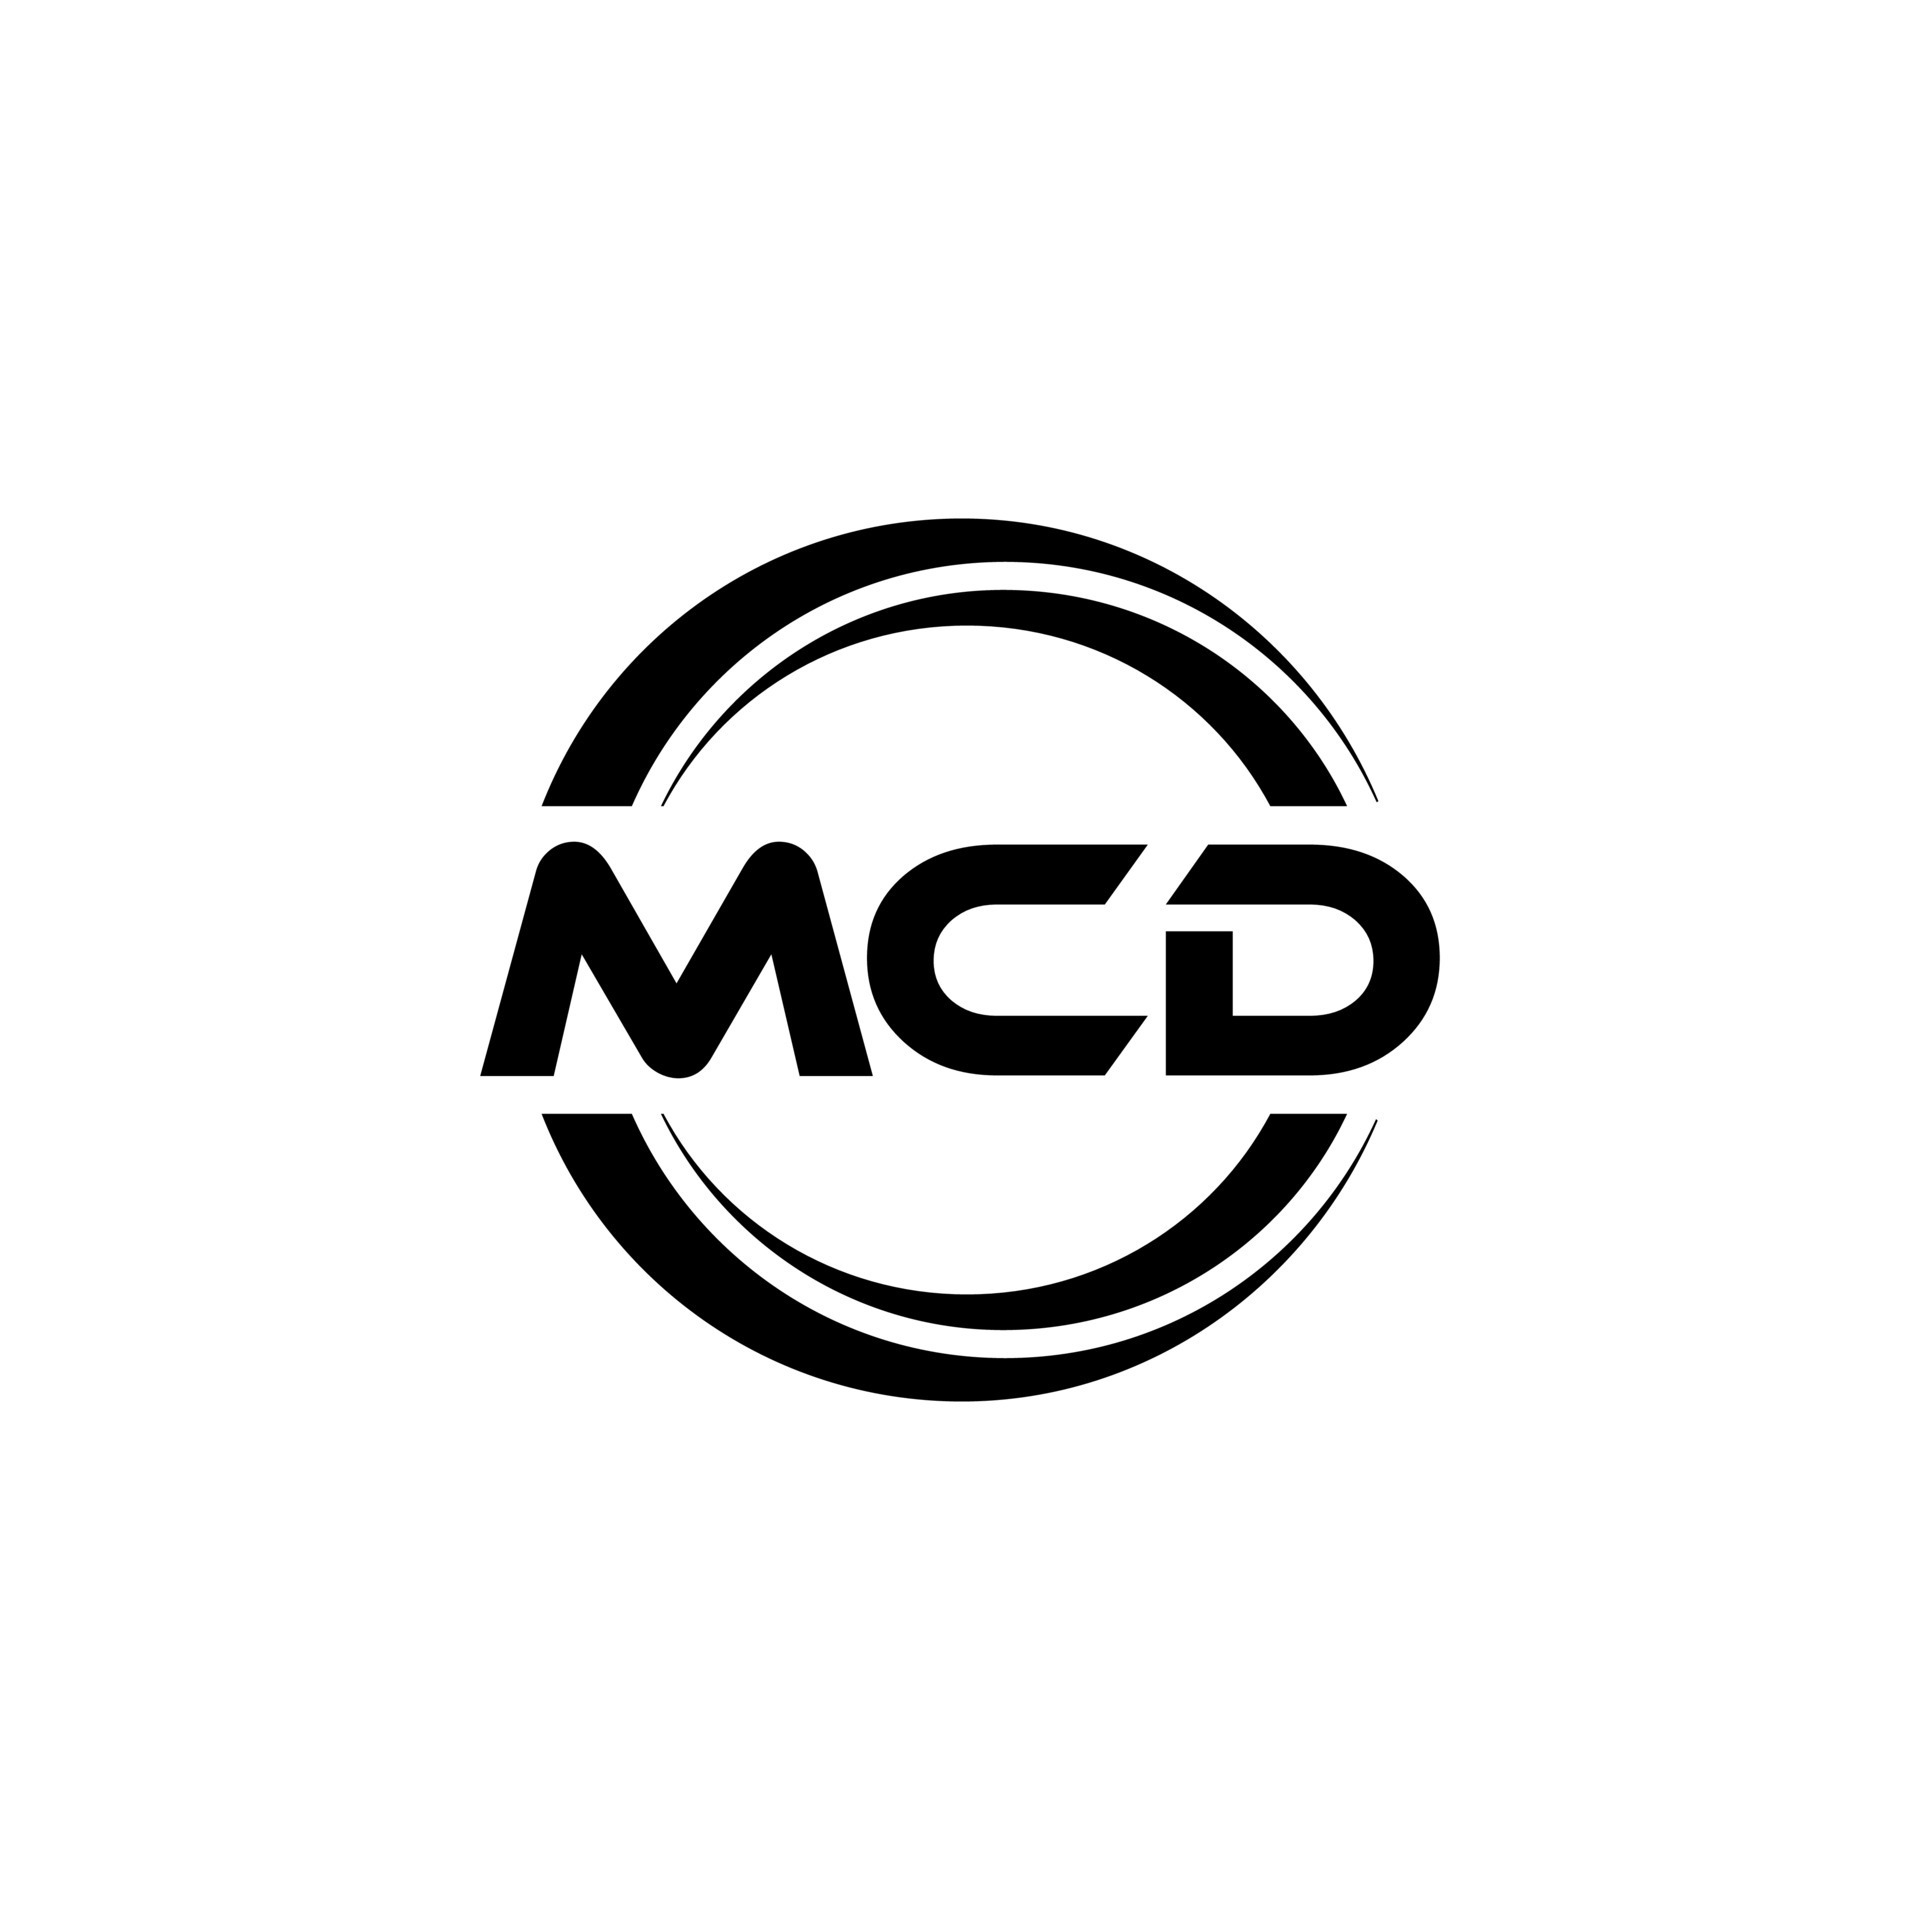 design de logotipo de carta mcd na ilustração. logotipo vetorial, desenhos  de caligrafia para logotipo, pôster, convite, etc. 14609234 Vetor no  Vecteezy